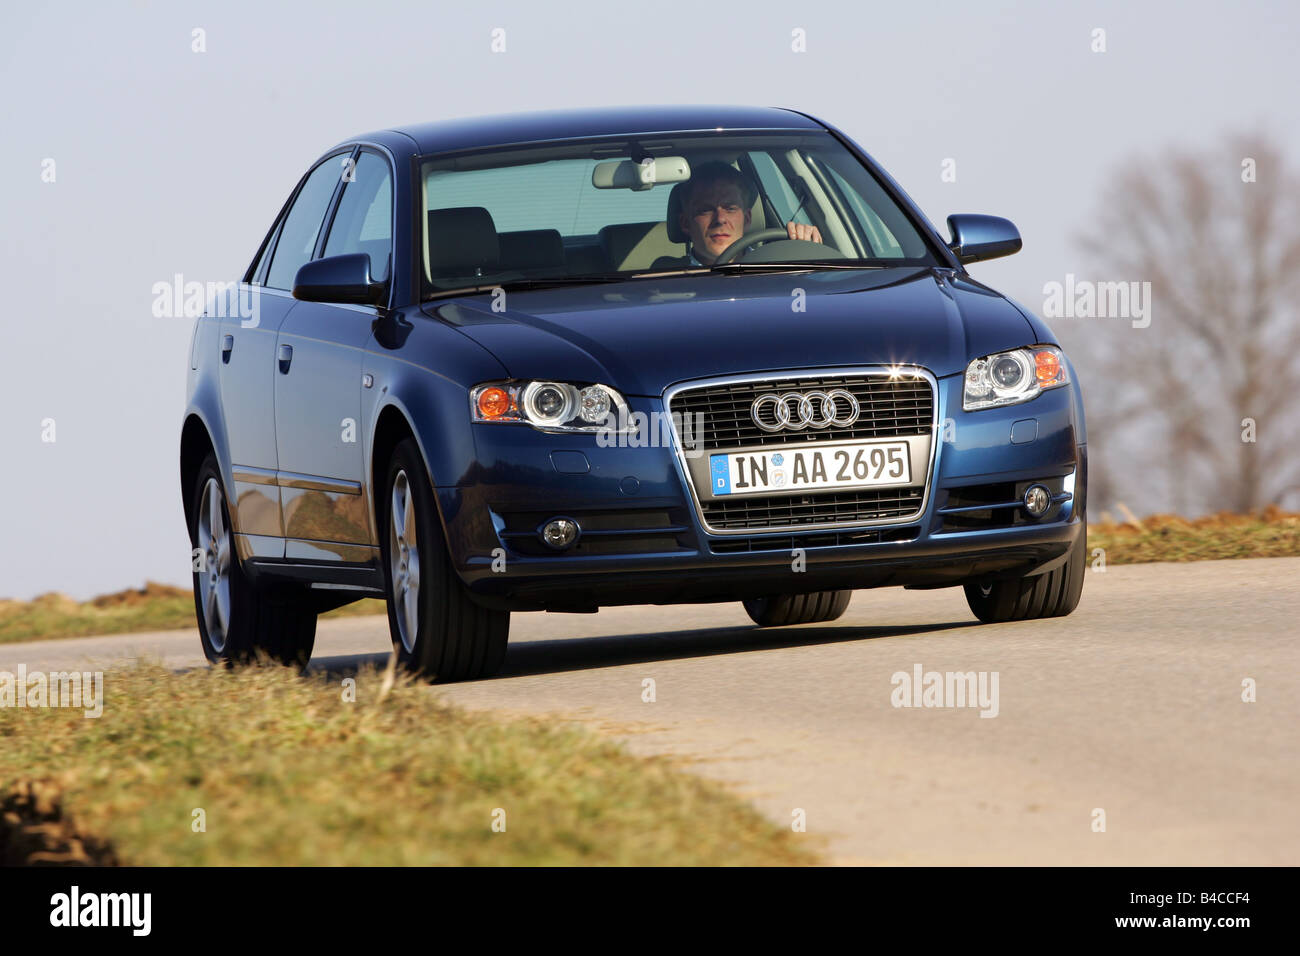 Auto, Audi A4 2.0 TDI, Modelljahr 2005-, dunkel blau, mittlere Klasse,  Limousine, fahren, schräg von vorne, Vorderansicht, Länder Stockfotografie  - Alamy